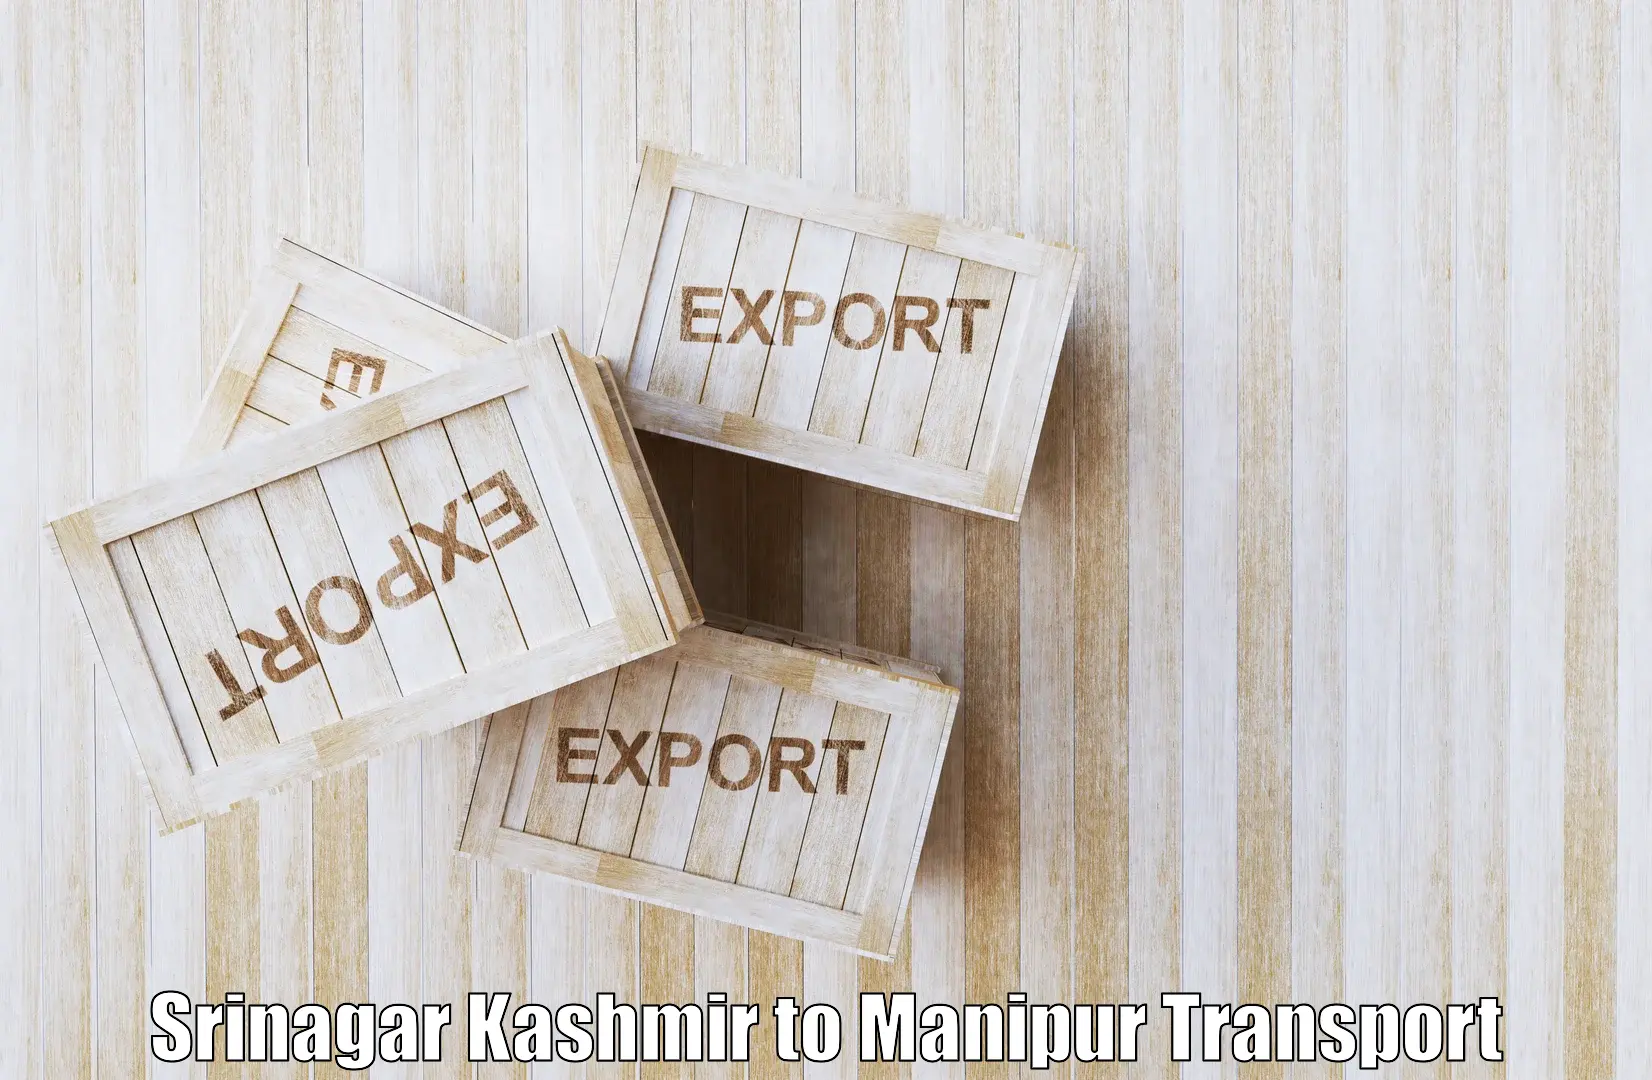 Commercial transport service Srinagar Kashmir to Imphal